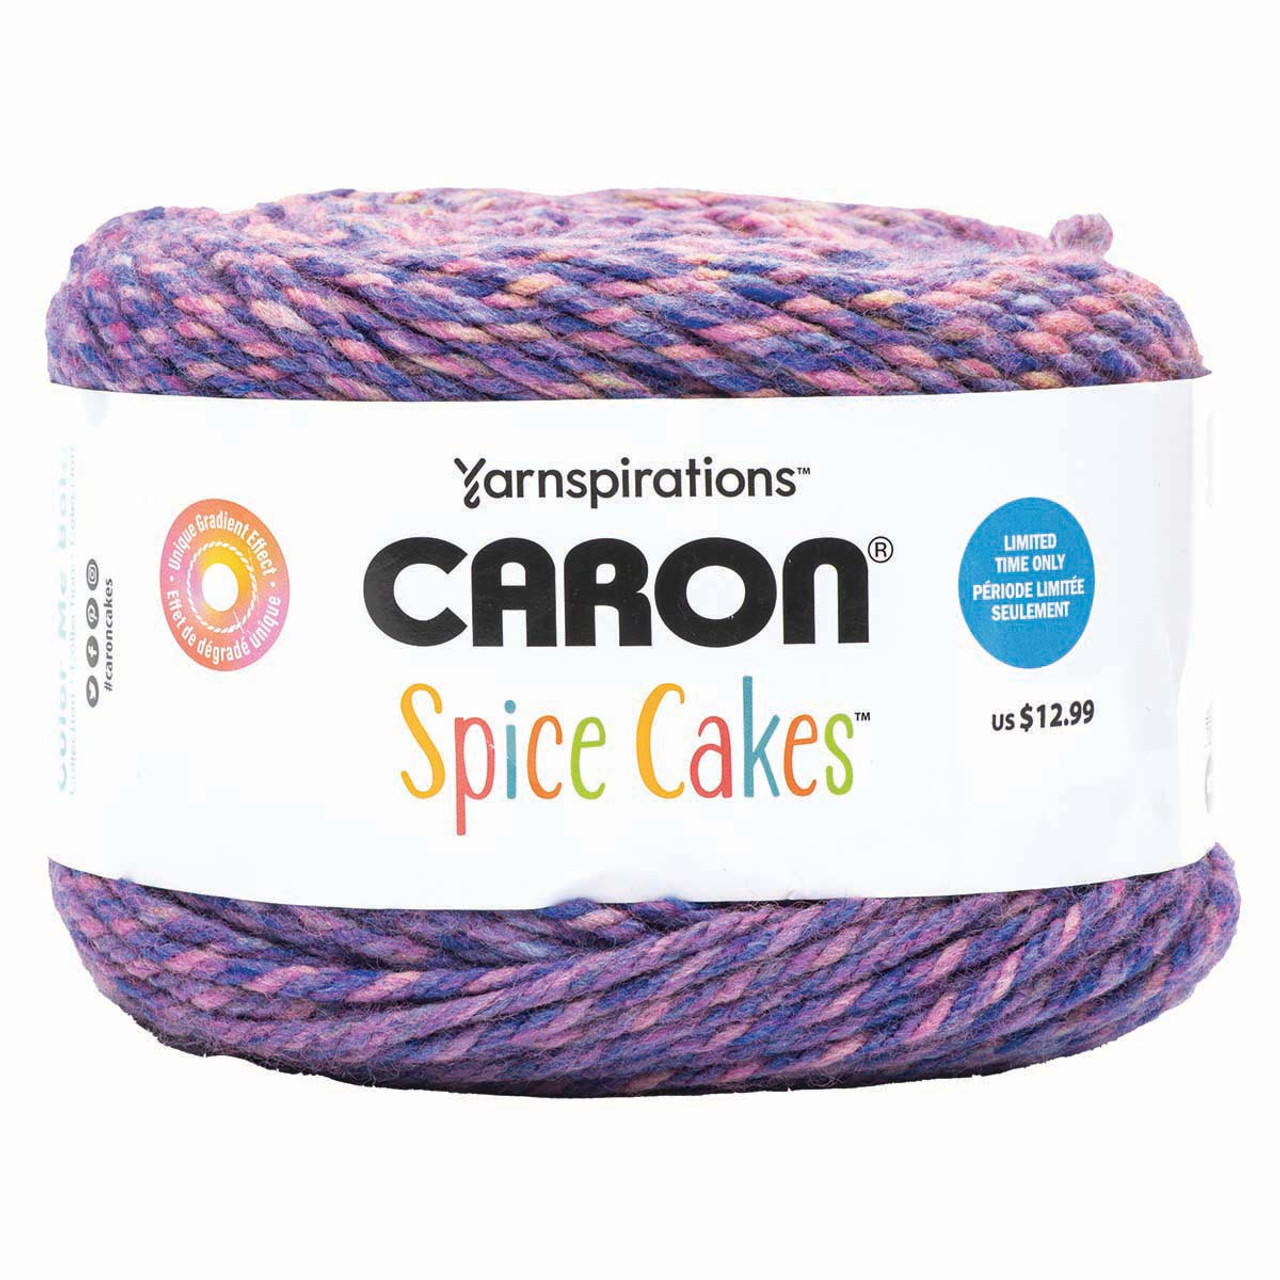 Caron Spice Cakes Yarn